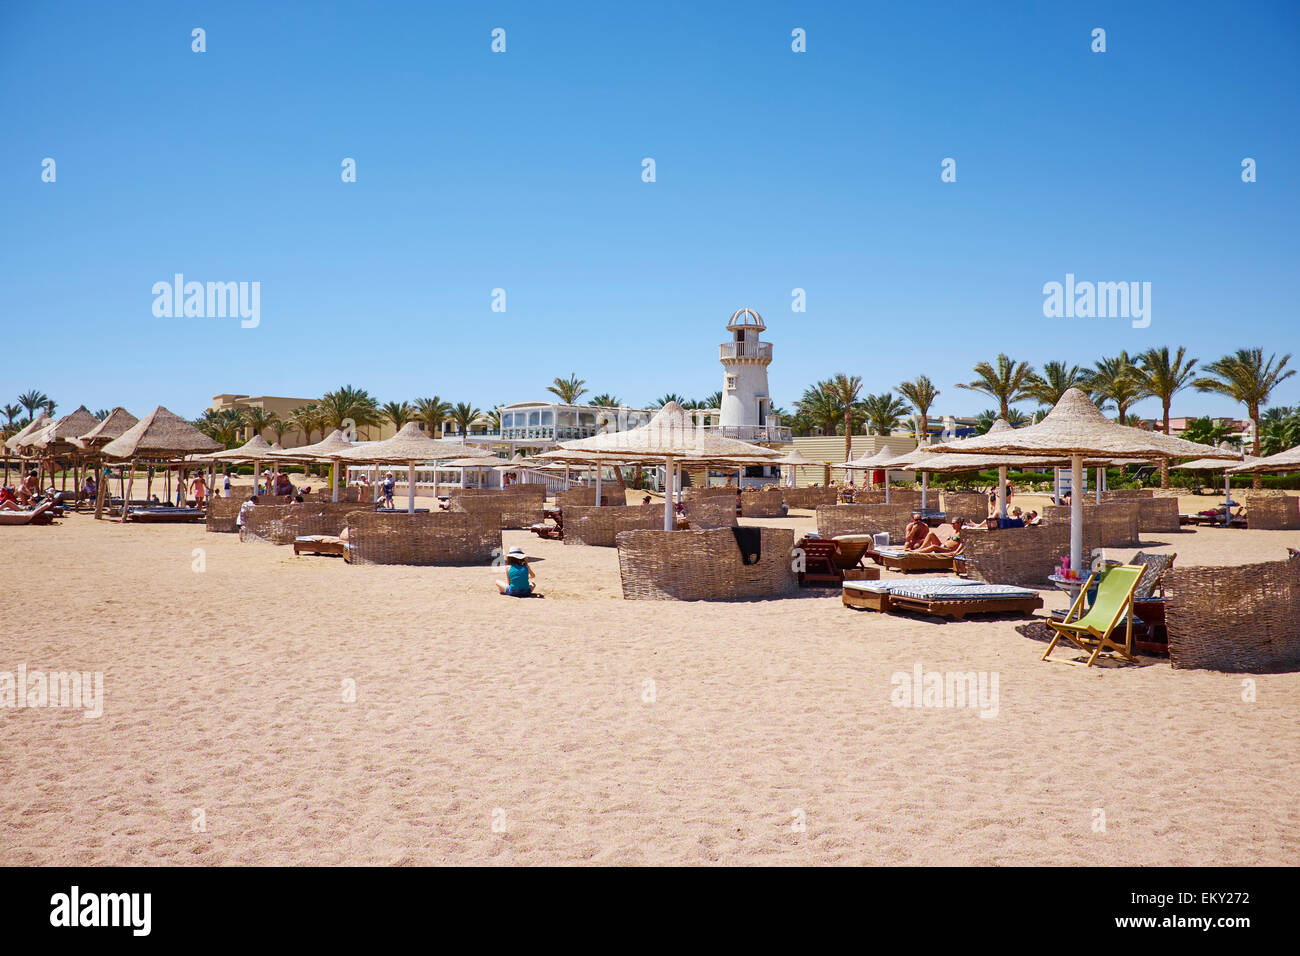 Der Strand am Roten Meer Meerenge von Tiran Sharm El Sheikh Ägypten Stockfoto